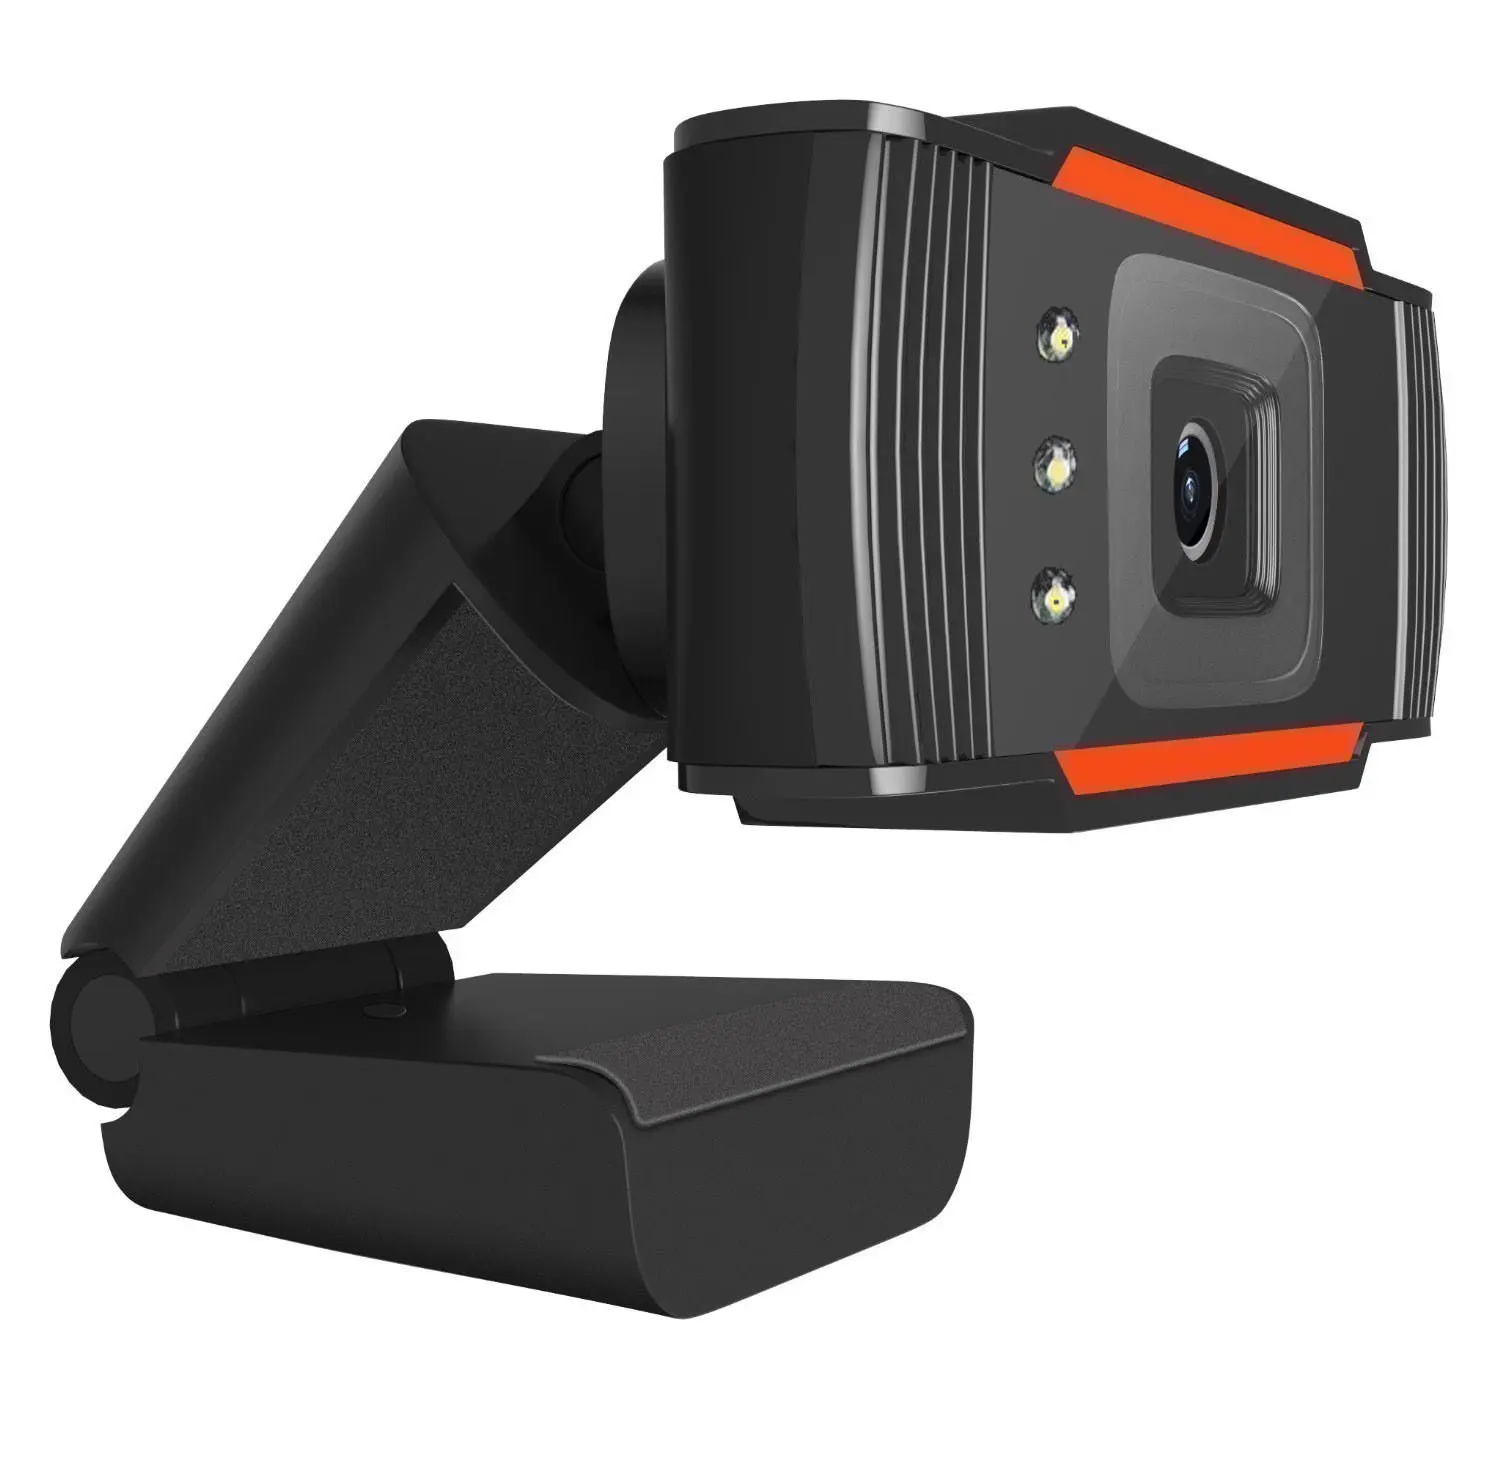 Cámara web cam 480p 720p 1080p Full HD 1920 transmisión en vivo cámaras de videoconferencia para PC portátil cámaras de vídeo webcam web